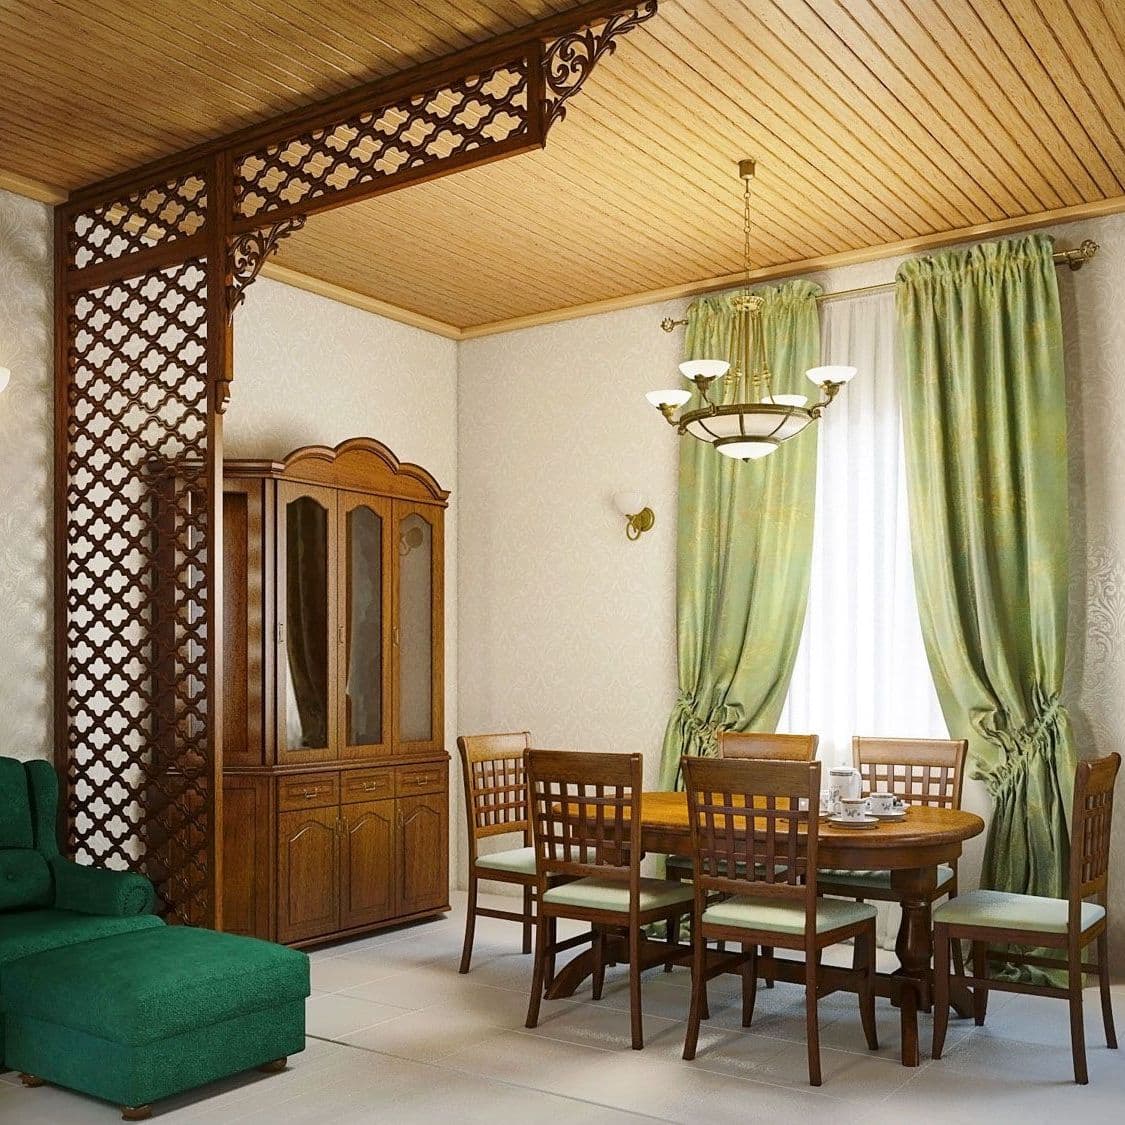 Интерьер гостиной дома в классическом русском стиле, с большой столовой, в зеленых тонах, с деревянным потолком, вид 3